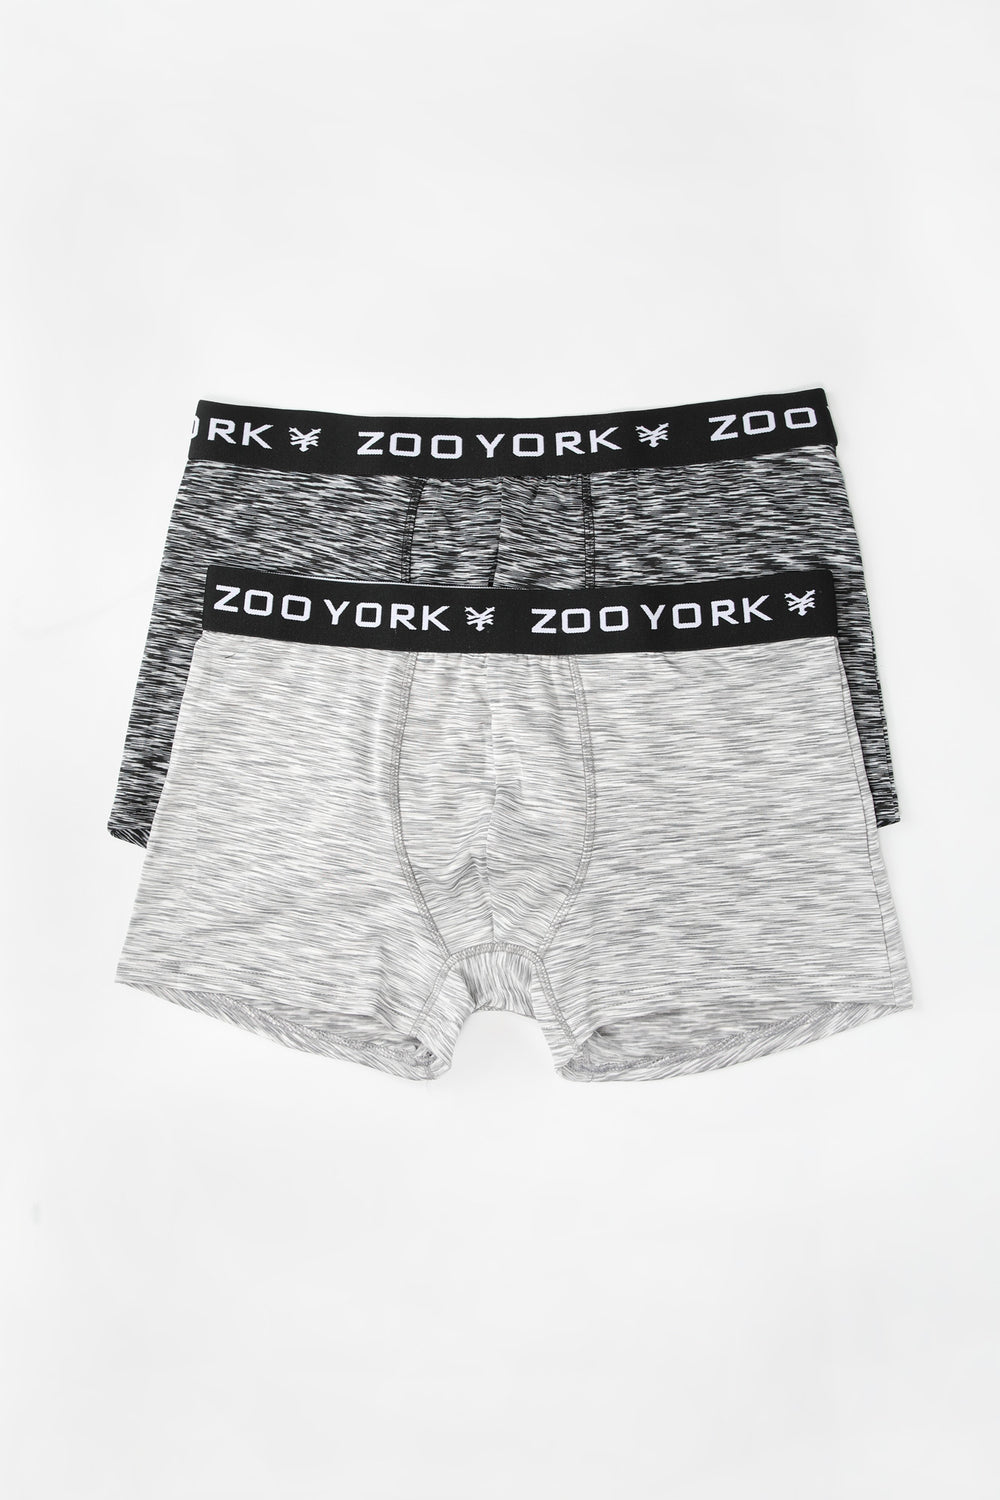 2 Paires de Boxers Space Dye Zoo York Homme Noir